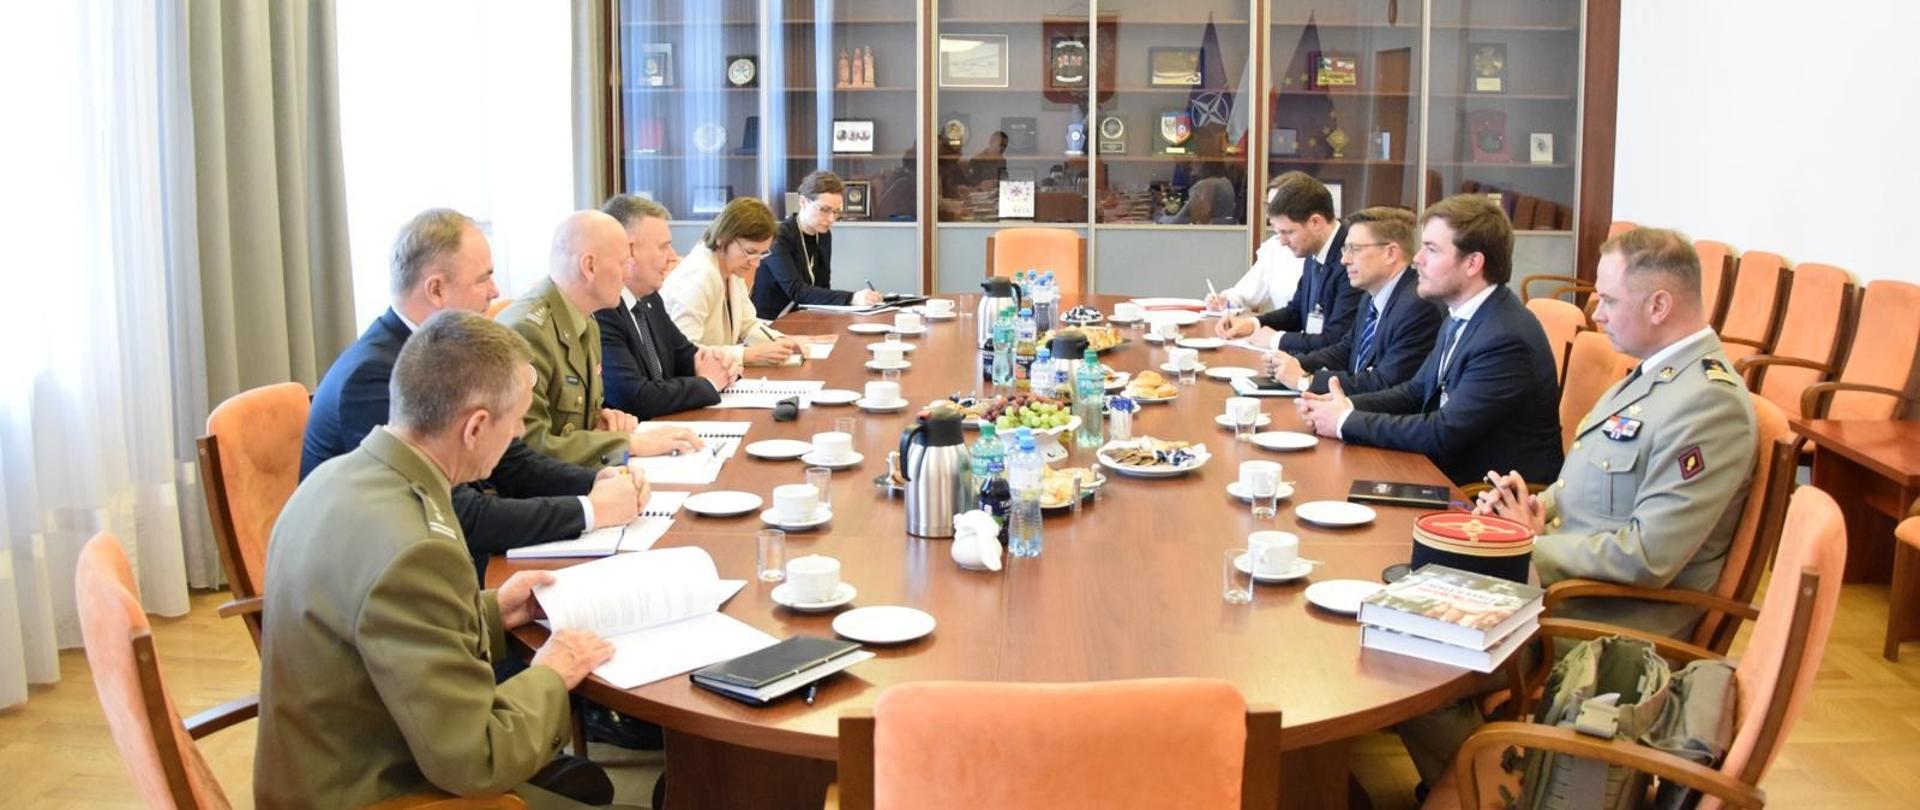 9 kwietnia wiceminister Paweł Bejda spotkał się z przedstawicielami Komisji Obrony francuskiego parlamentu w towarzystwie attaché obrony Republiki Francji w Warszawie, płk. Pierre-Marie Lejeune.